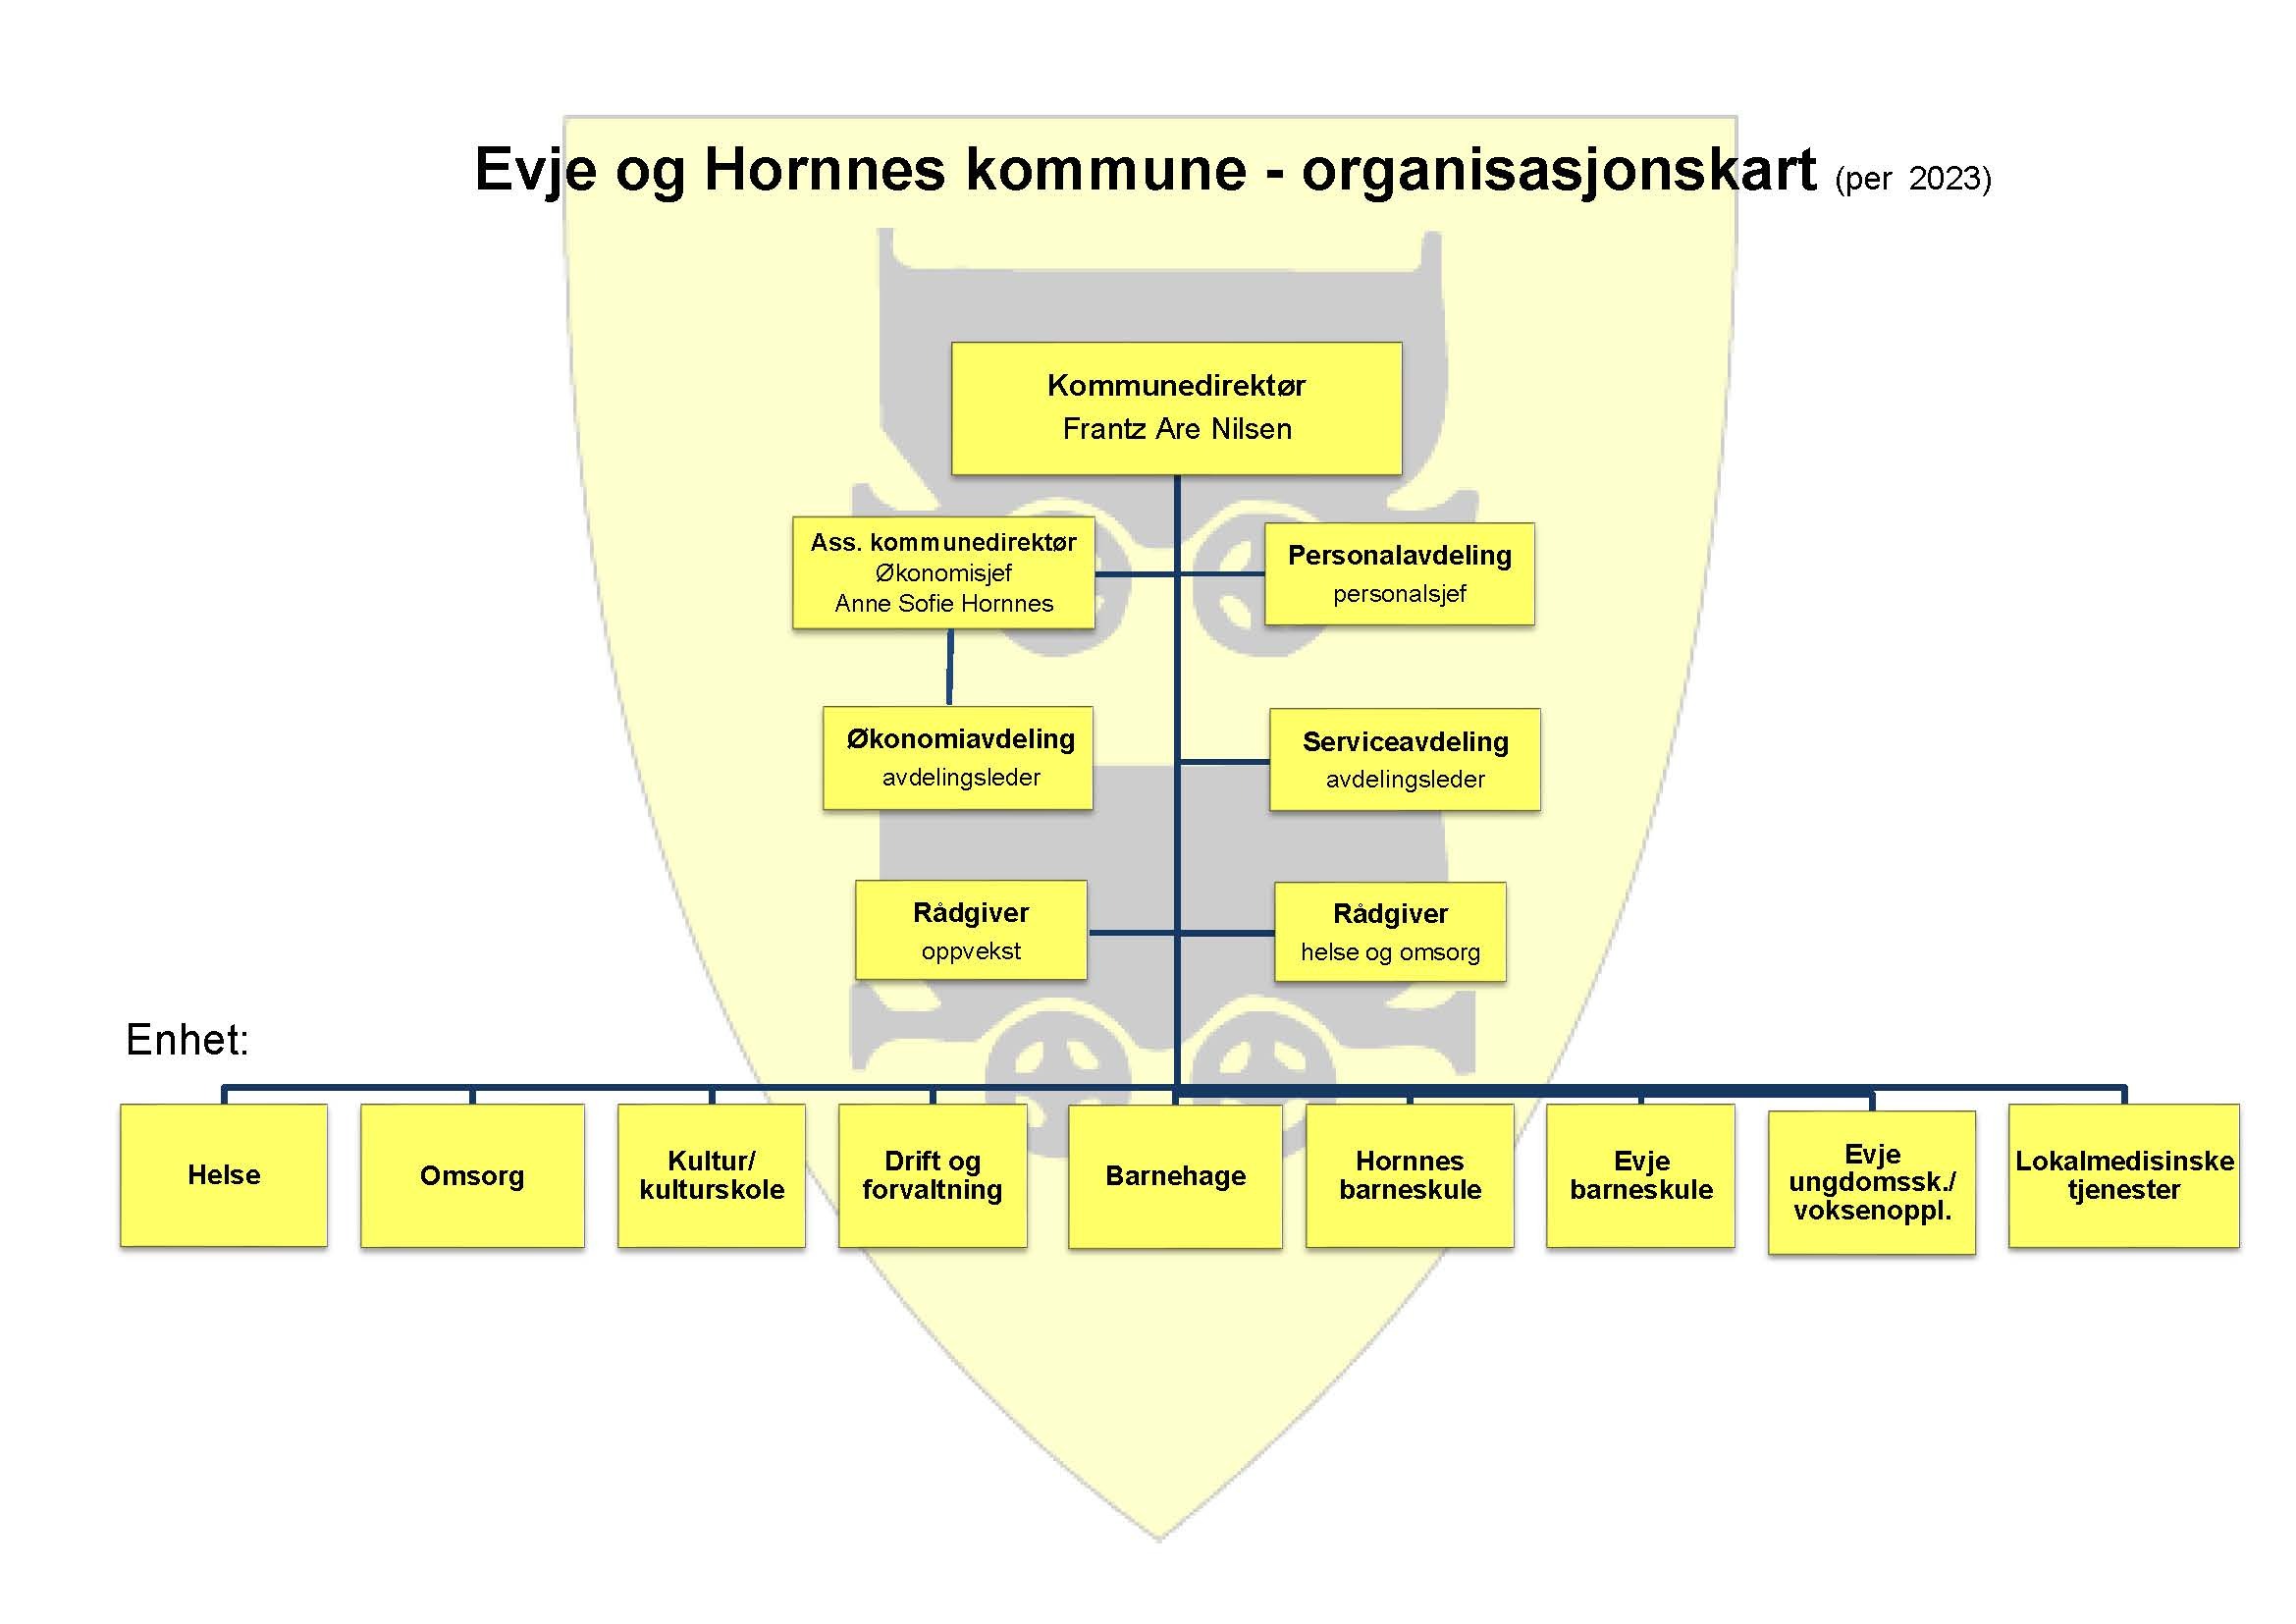 Organisasjonskart over aministrativ ledelse i Evje og Hornnes kommune per 2023